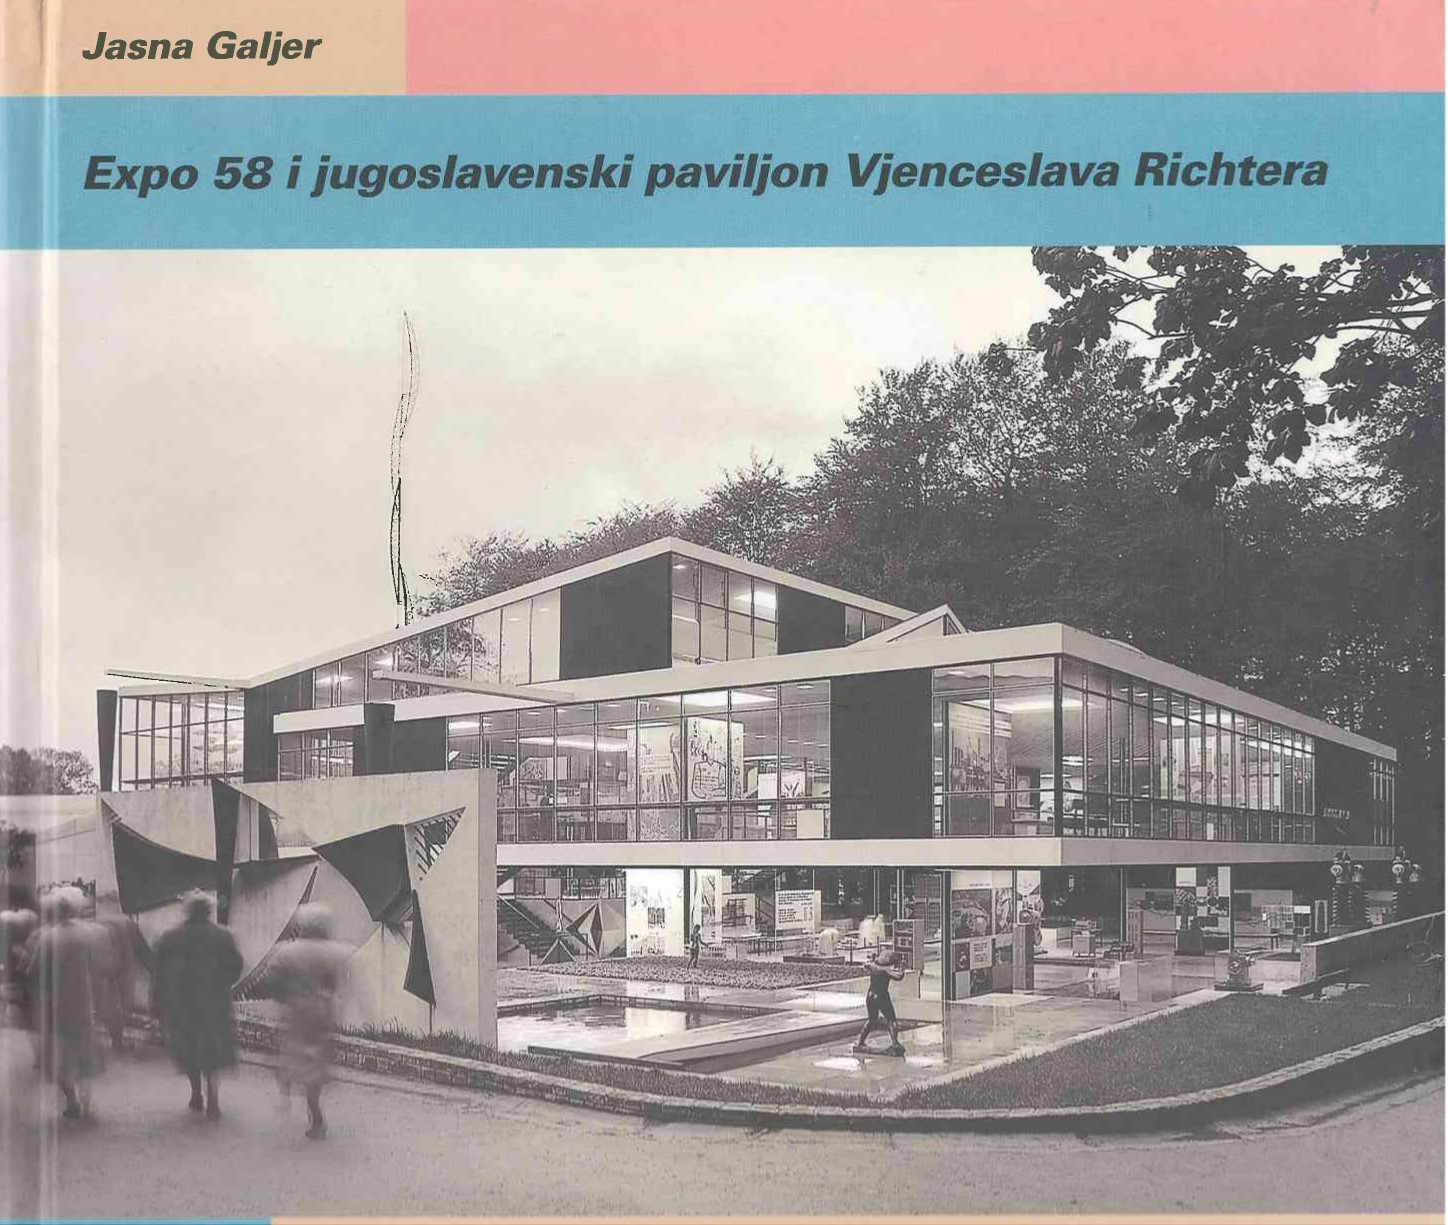 Expo 58 i jugoslavenski paviljon Vjenceslava Richtera